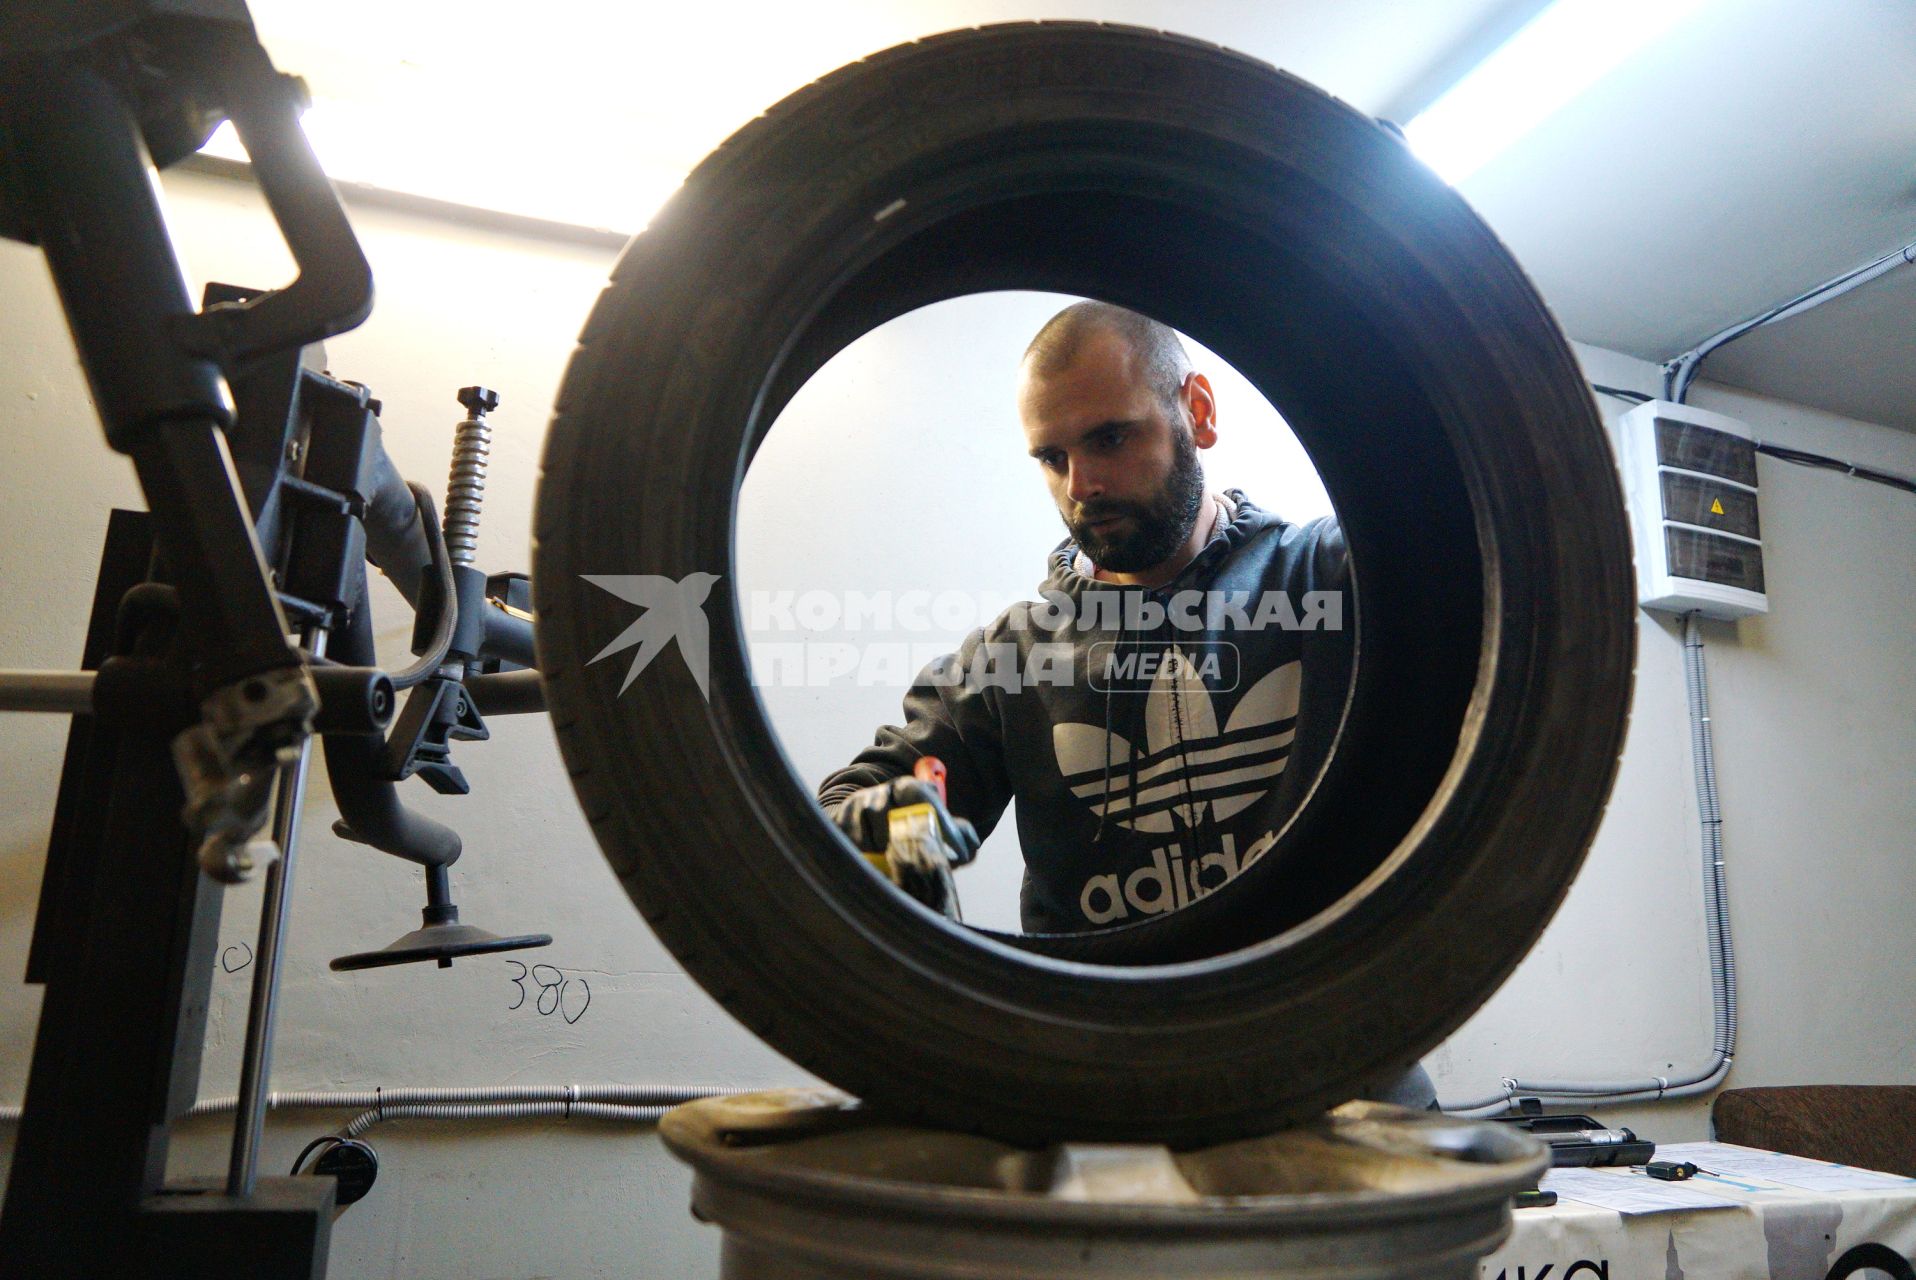 Екатеринбург. Сотрудник шиномонтажной мастерской меняет автомобильное колесо.